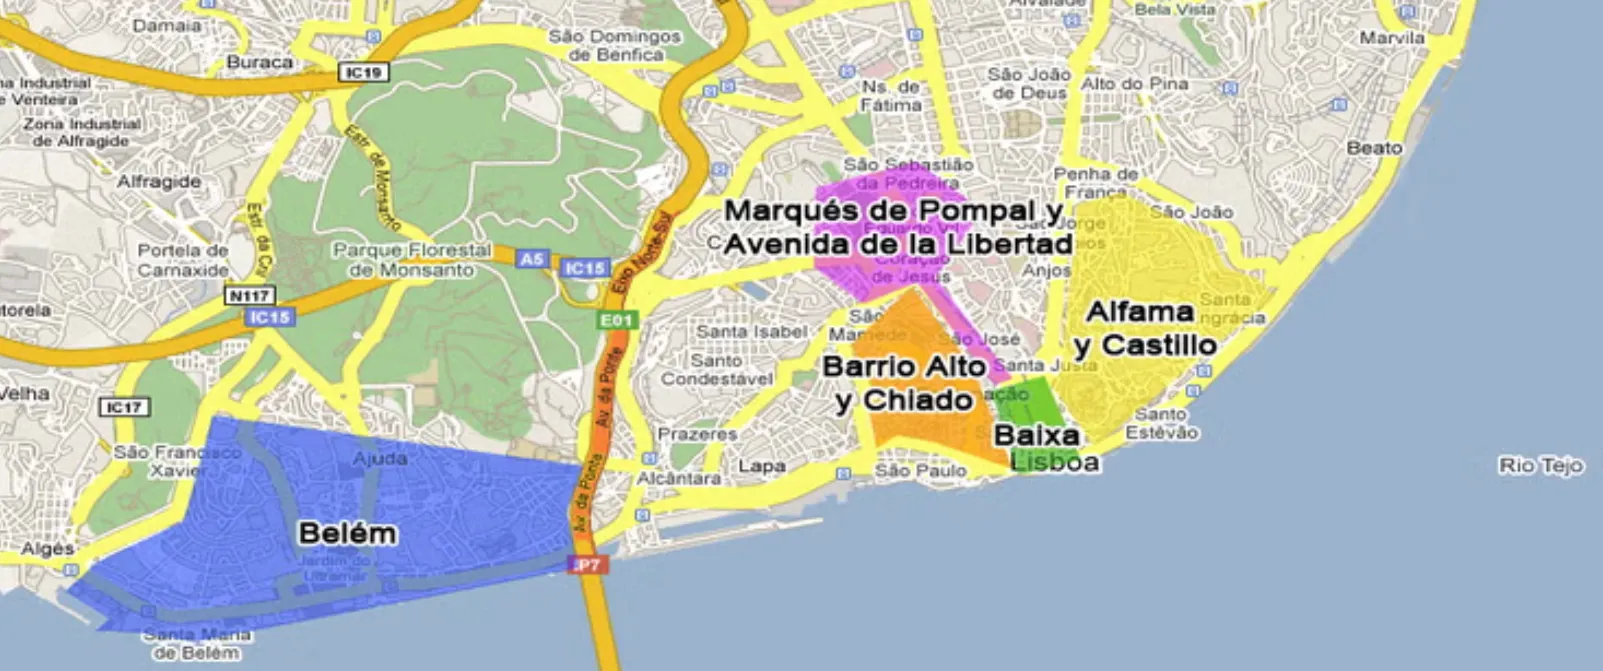 Map from lisbon.net